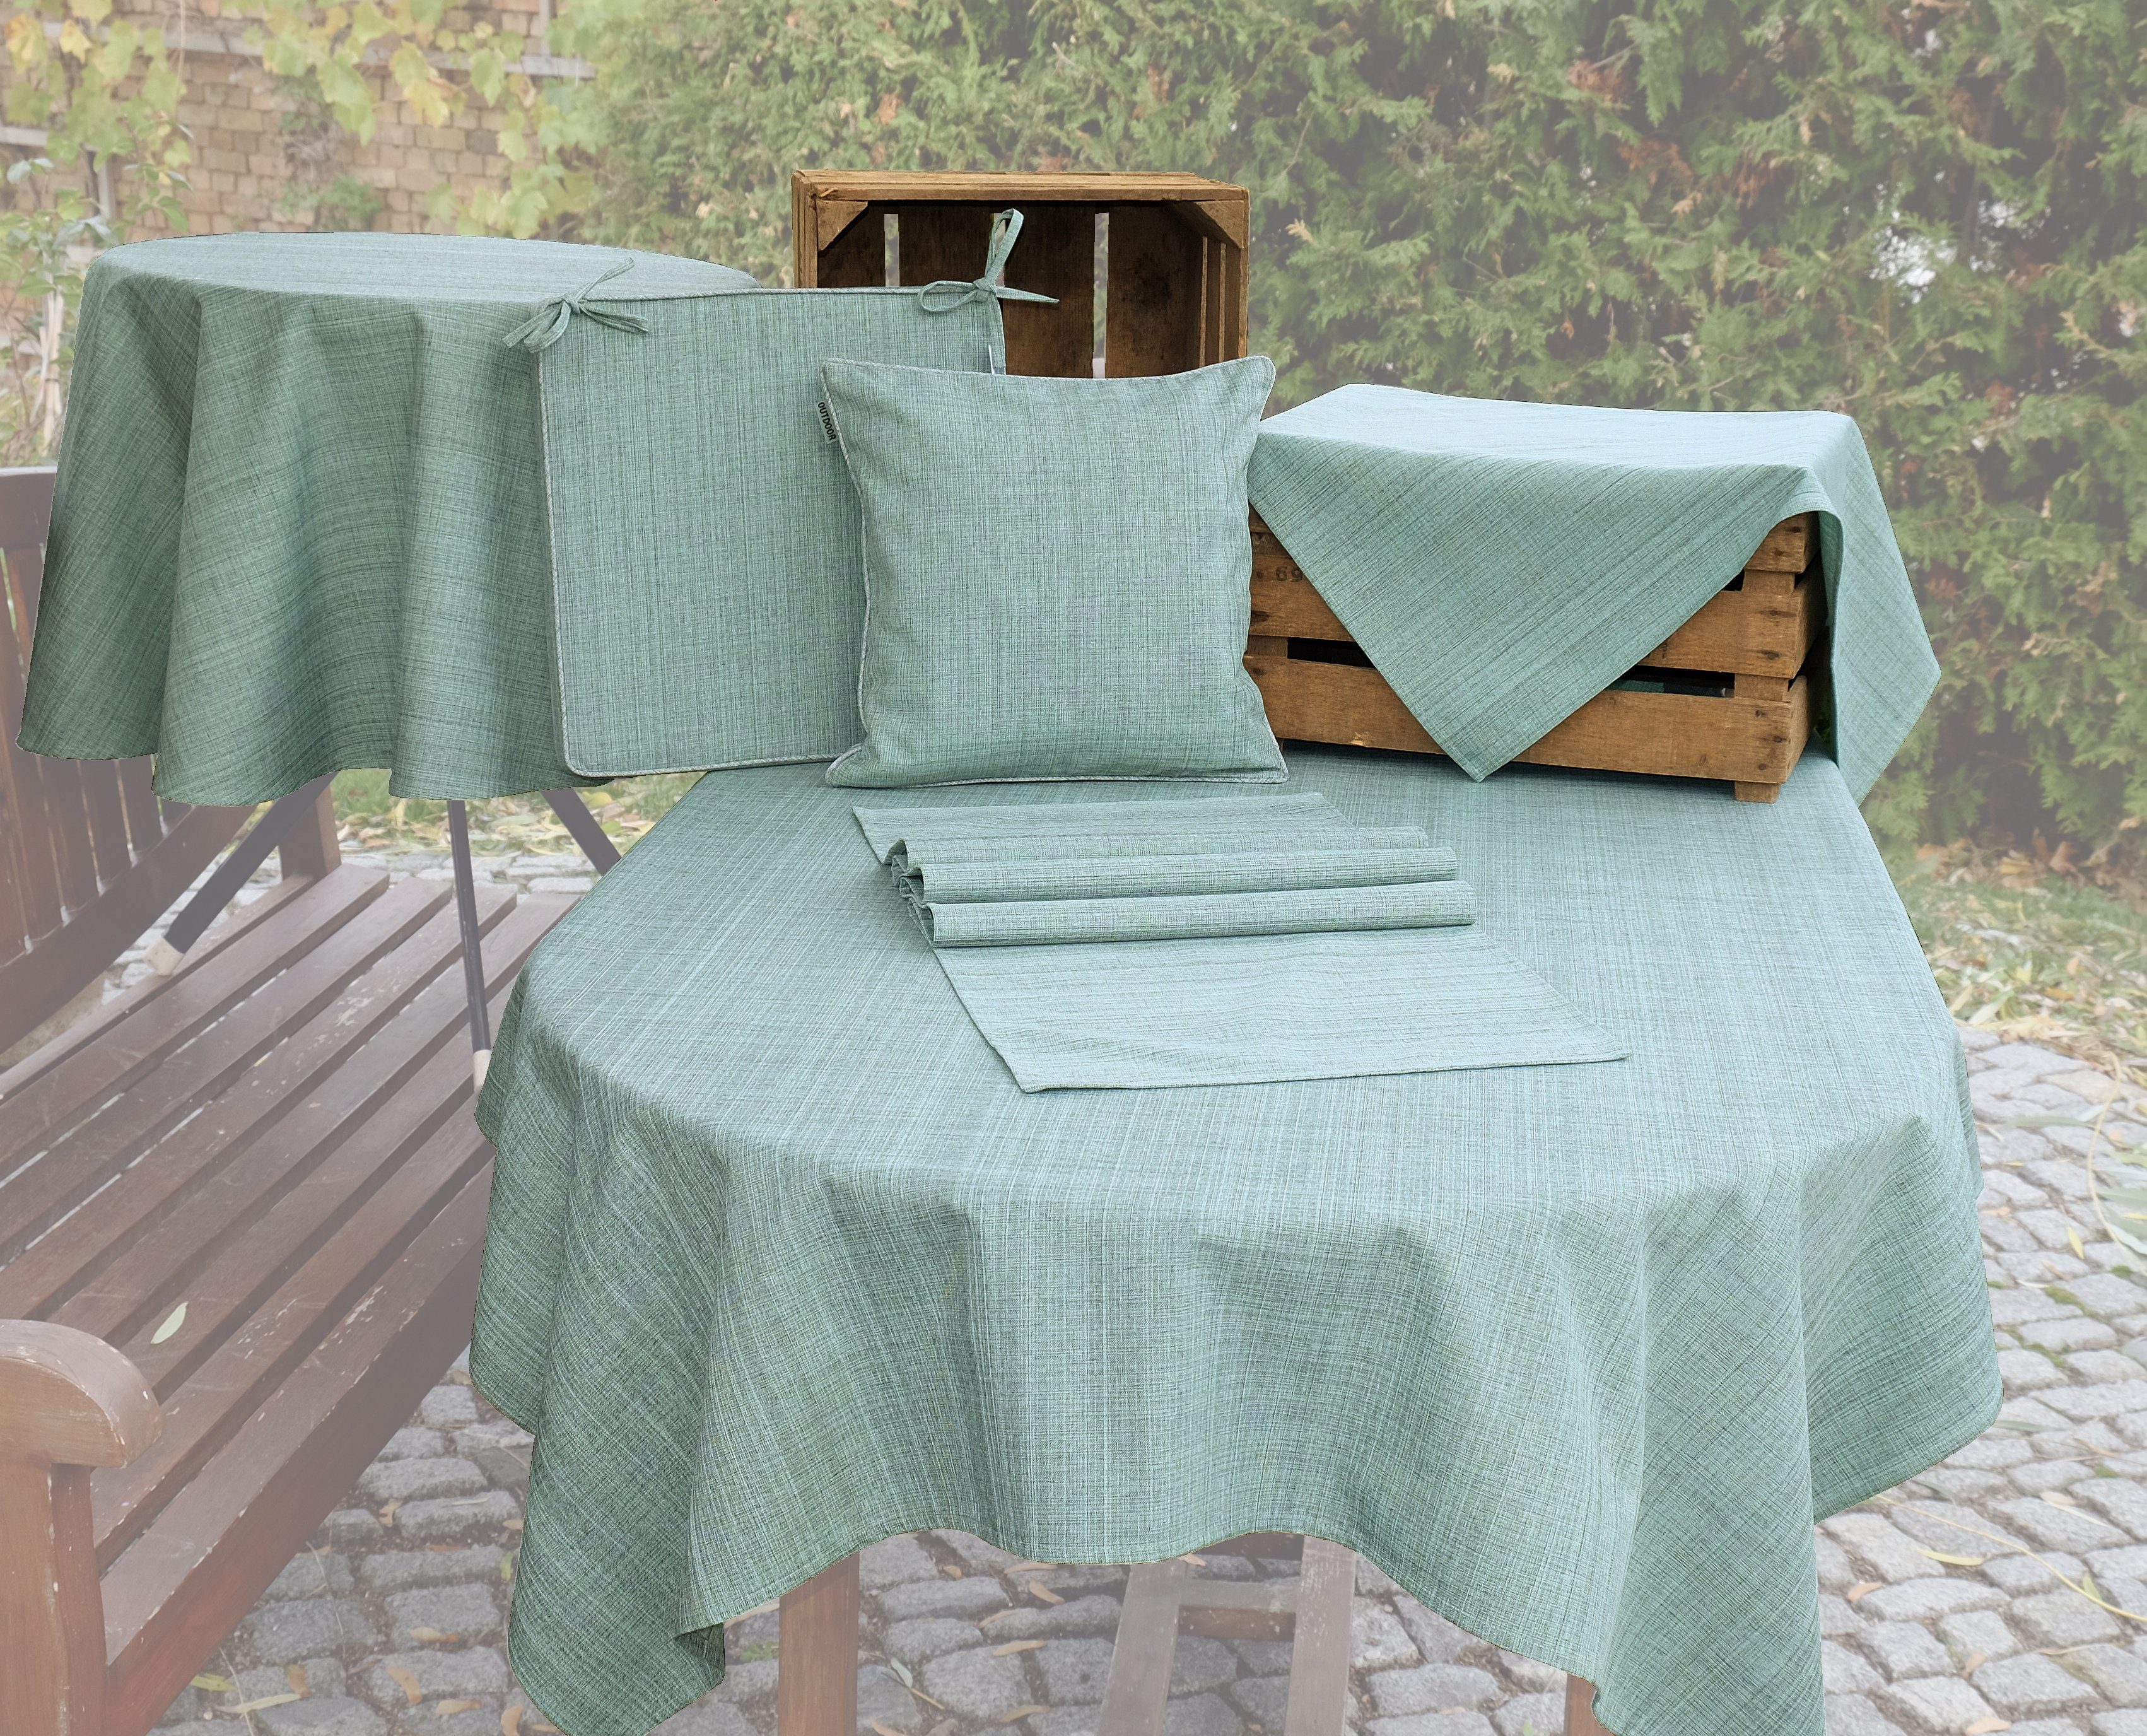 TextilDepot24 und Drinnen, mint für Outdoor wetterbeständig Tischwäsche Draussen Gartentischdecke meliert